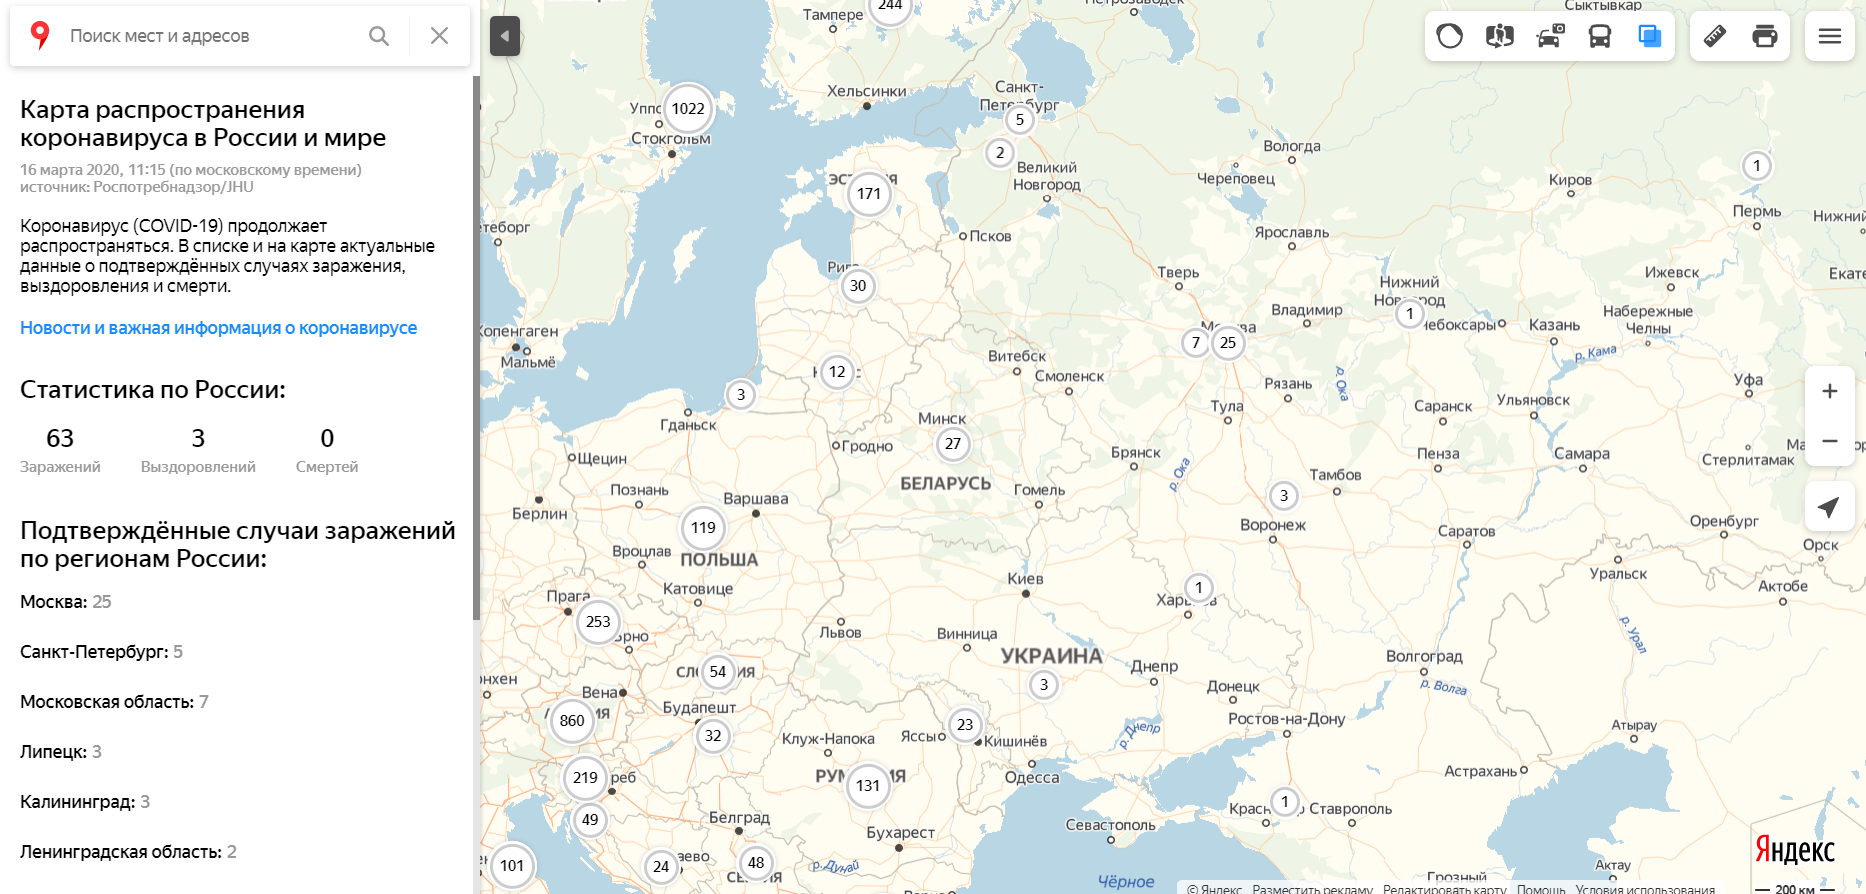 Коронавирус COVID-19: ''Яндекс''-карта показывает недостоверные данные по России